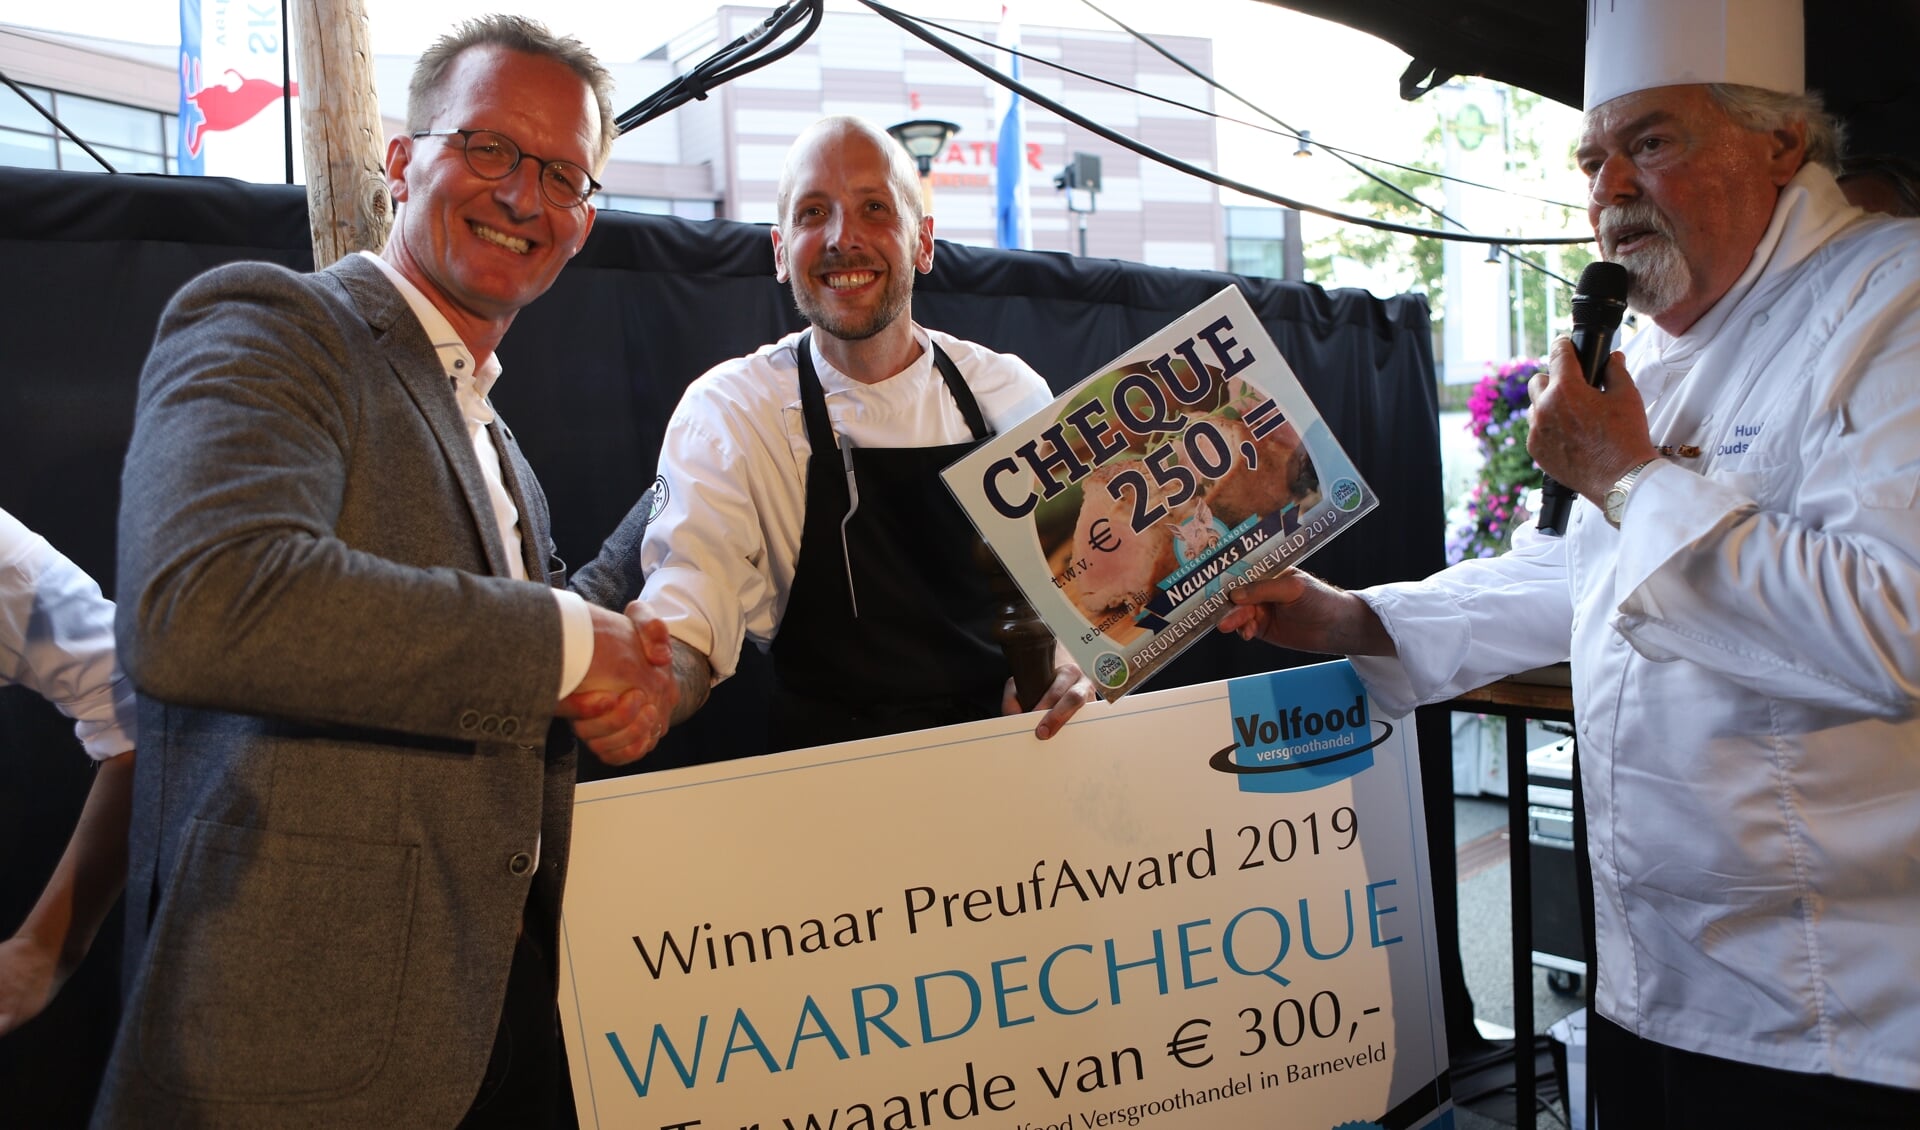 Jesse Madern van Het Groene Pandje won eerder dit jaar de PreufAward tijdens culinair festijn Preuvenement Barneveld.